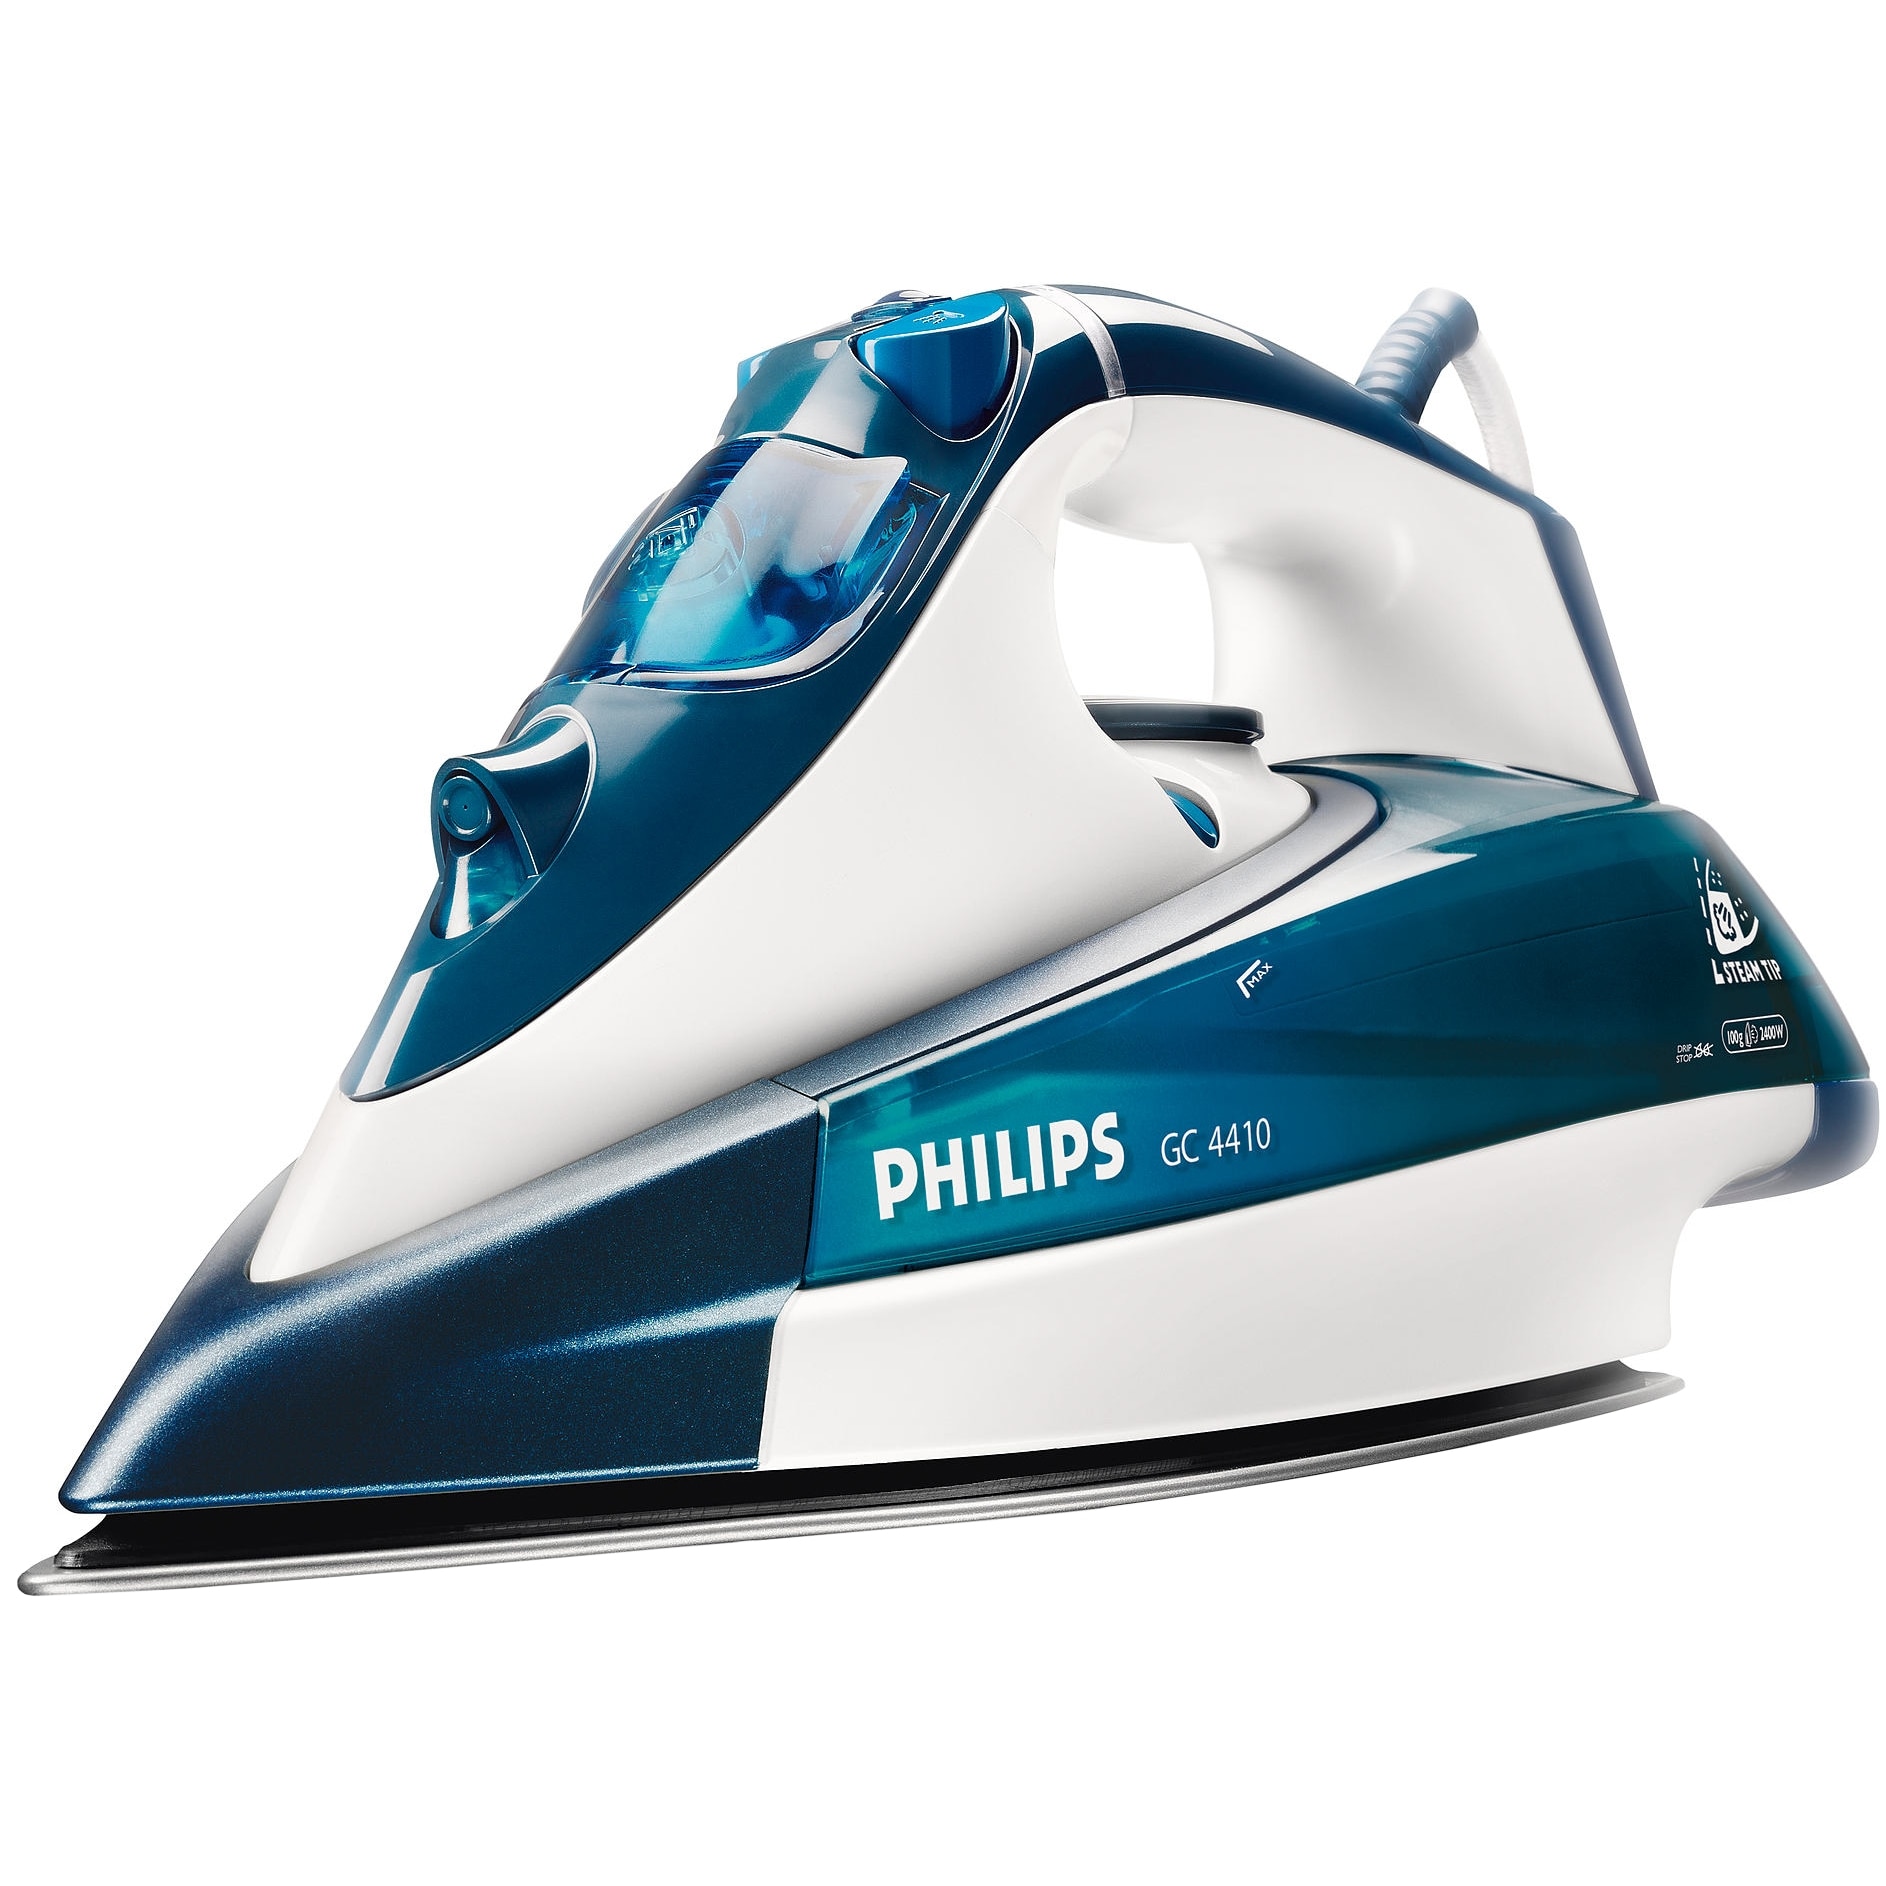 Philips gc купить. Утюг Philips Azur gc4420. Утюг Philips GC 4410. Утюг Philips gc4420/02 Azur. Philips gc4410/02 Azur.